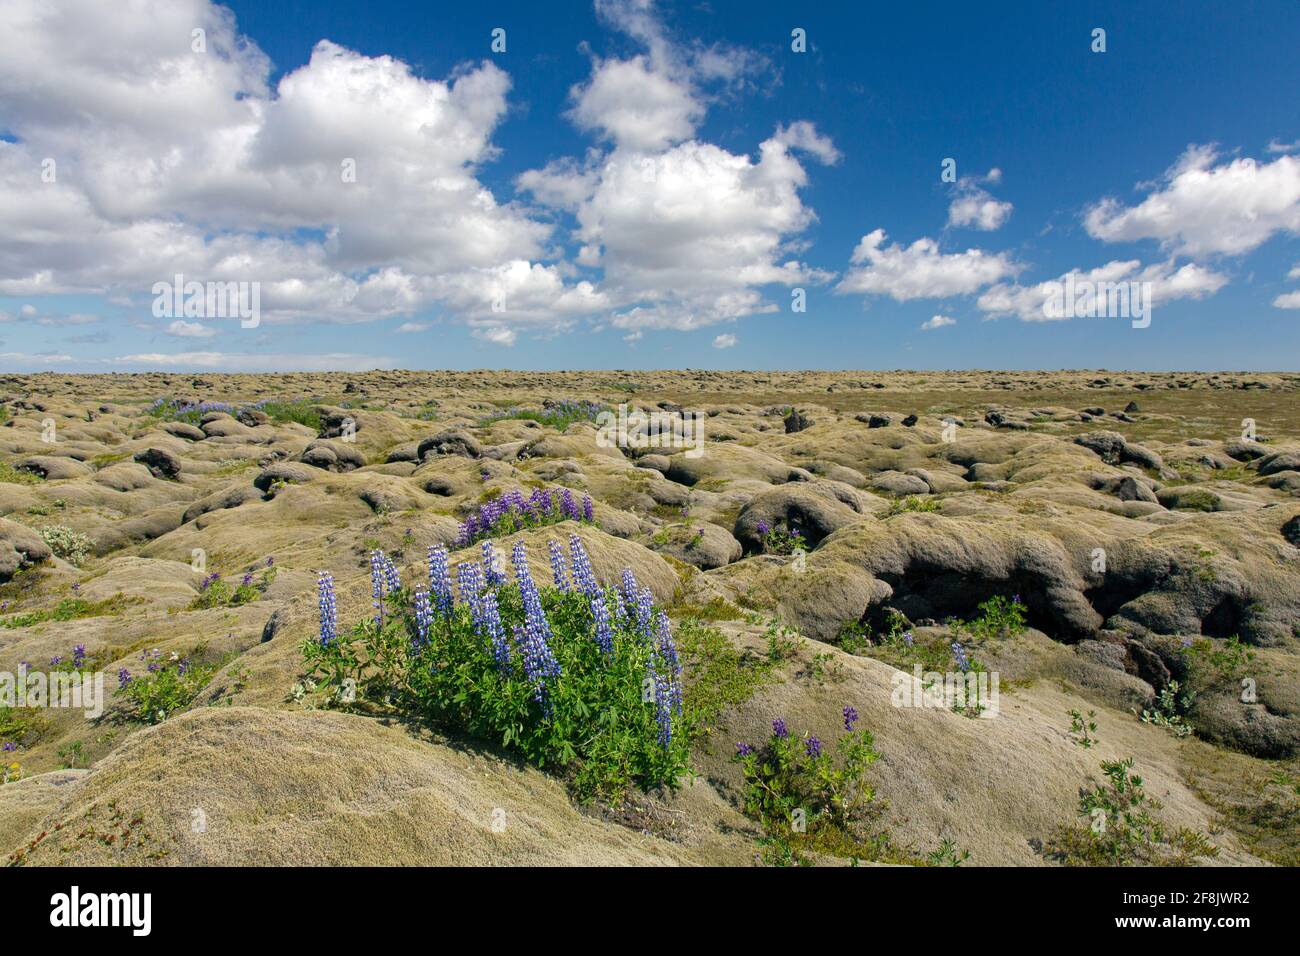 Les lupins Nootka (Lupinus nootkatensis) en fleur sur des mousses à franges laineux couvrent le champ de lave d'Eldhraun, dans le sud de l'Islande Banque D'Images